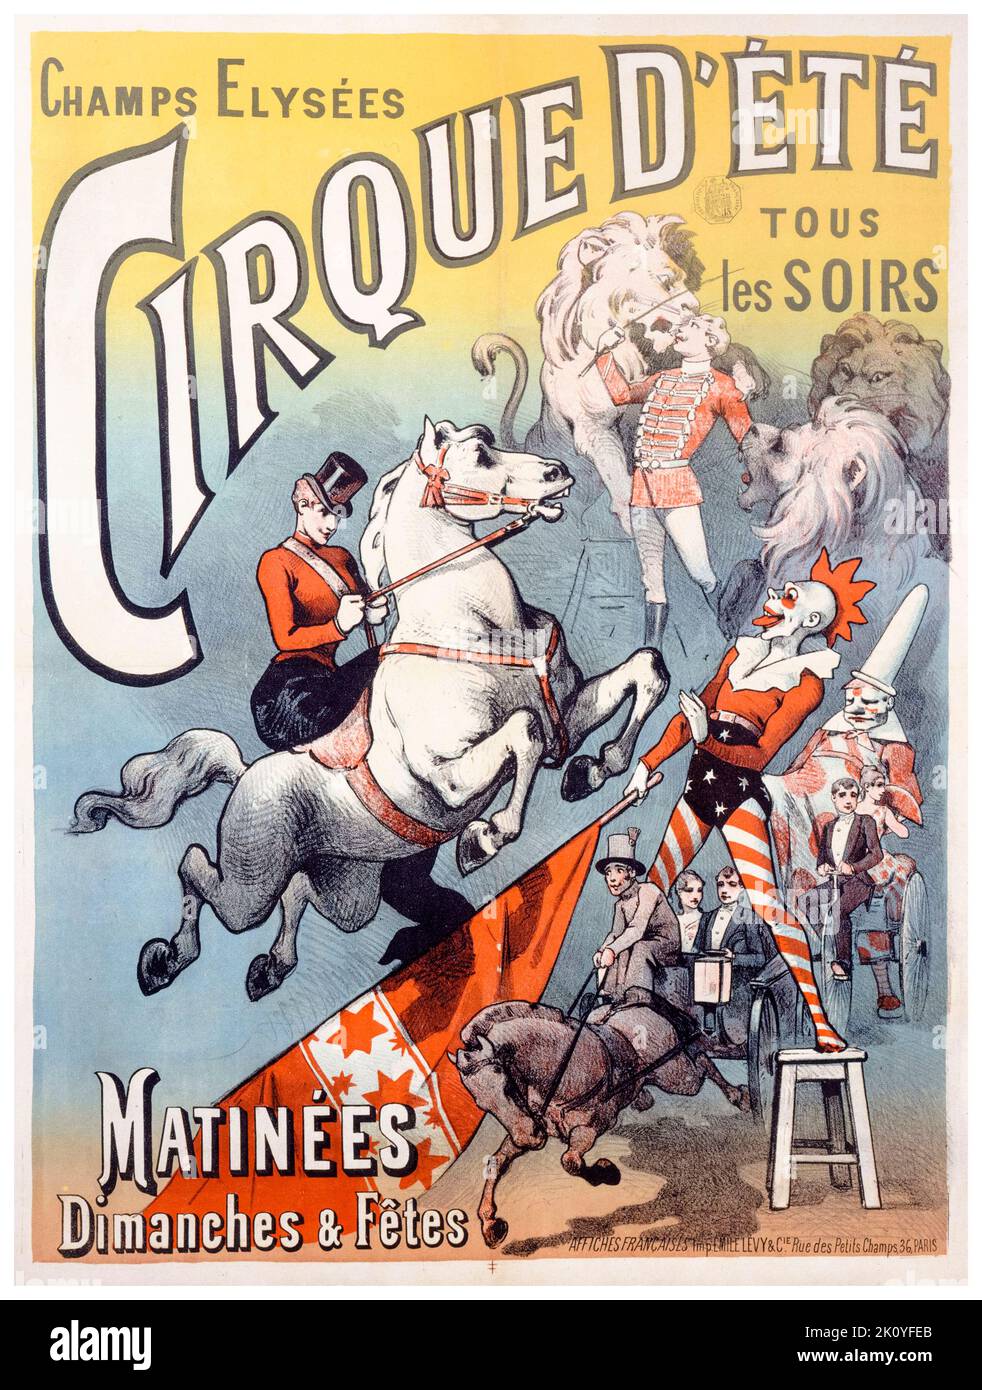 19th Century French Circus affiche faisant la promotion du Cirque d'ETE dans les champs Elysées, Paris, 1886-1892 Banque D'Images